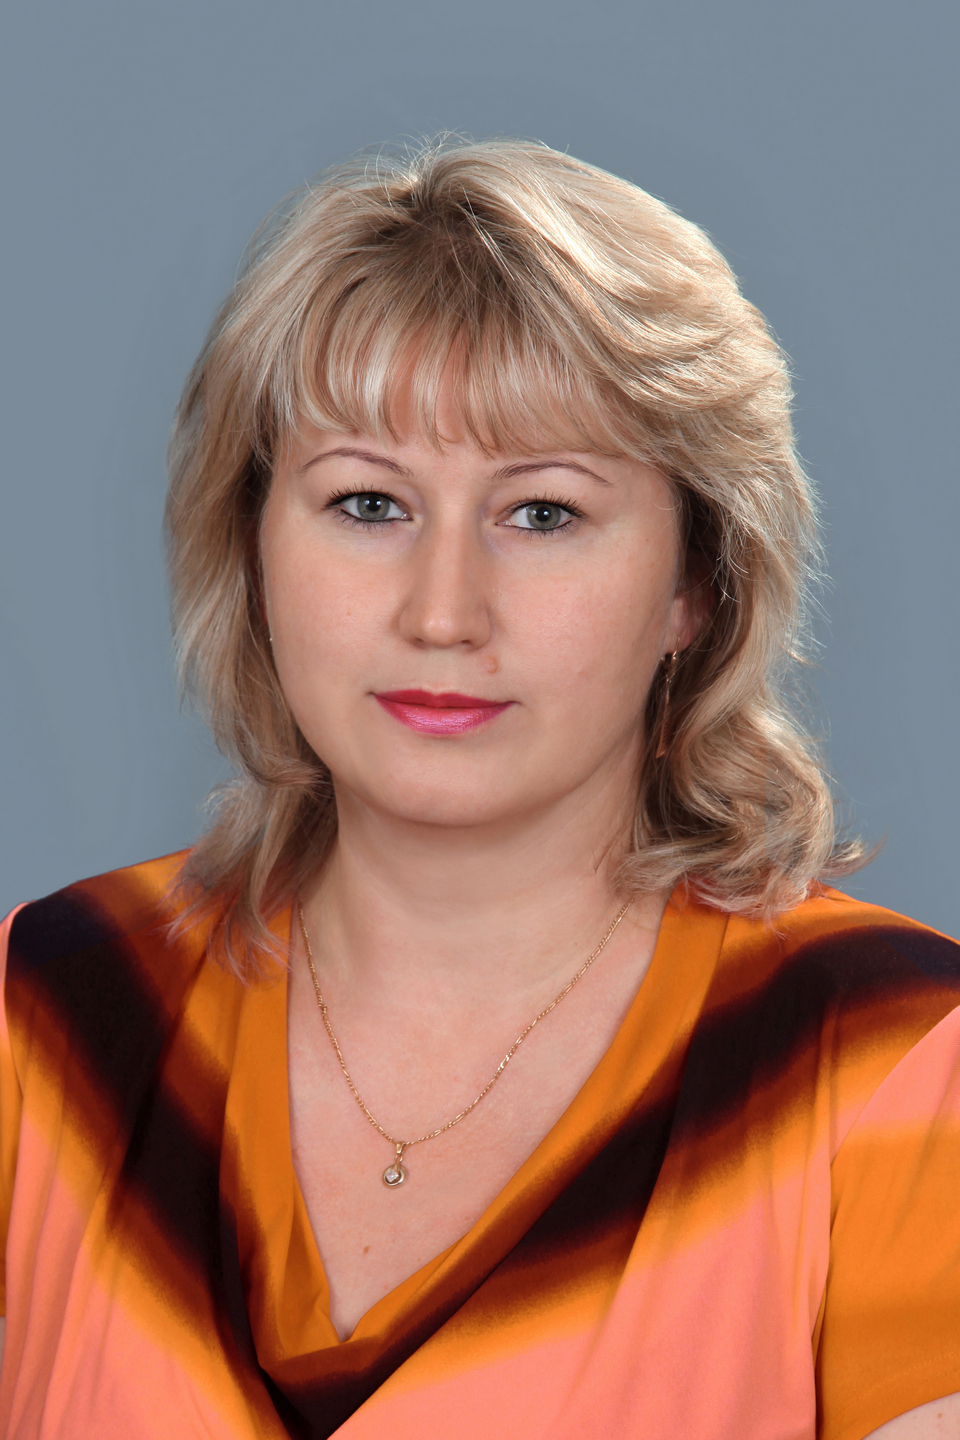 Моргунова Ирина Борисовна